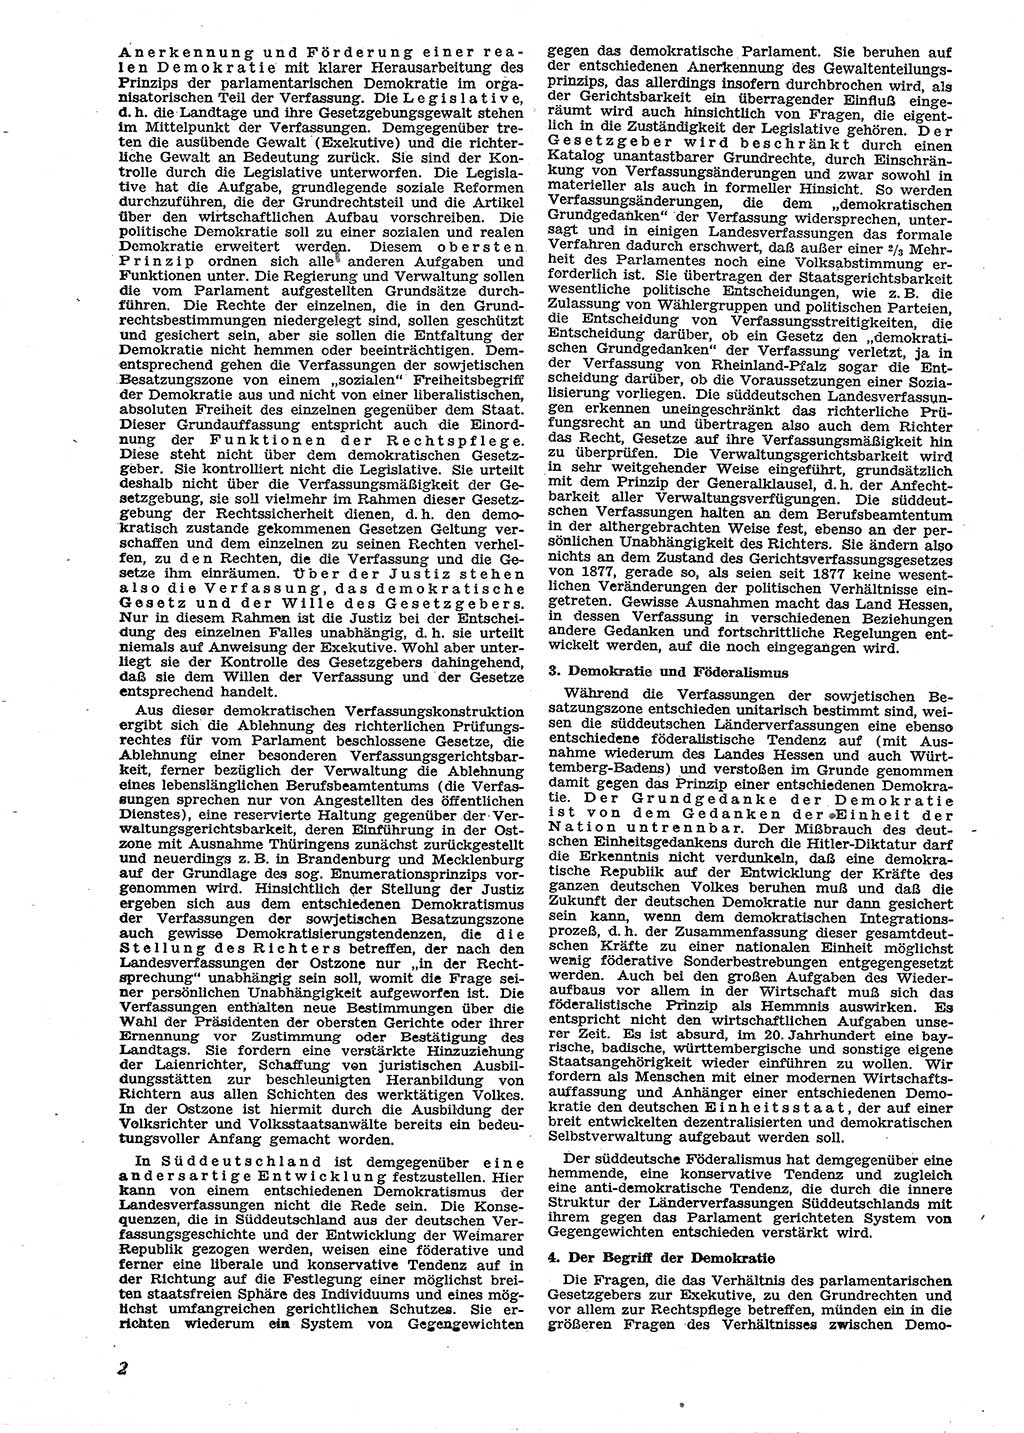 Neue Justiz (NJ), Zeitschrift für Recht und Rechtswissenschaft [Sowjetische Besatzungszone (SBZ) Deutschland], 2. Jahrgang 1948, Seite 2 (NJ SBZ Dtl. 1948, S. 2)